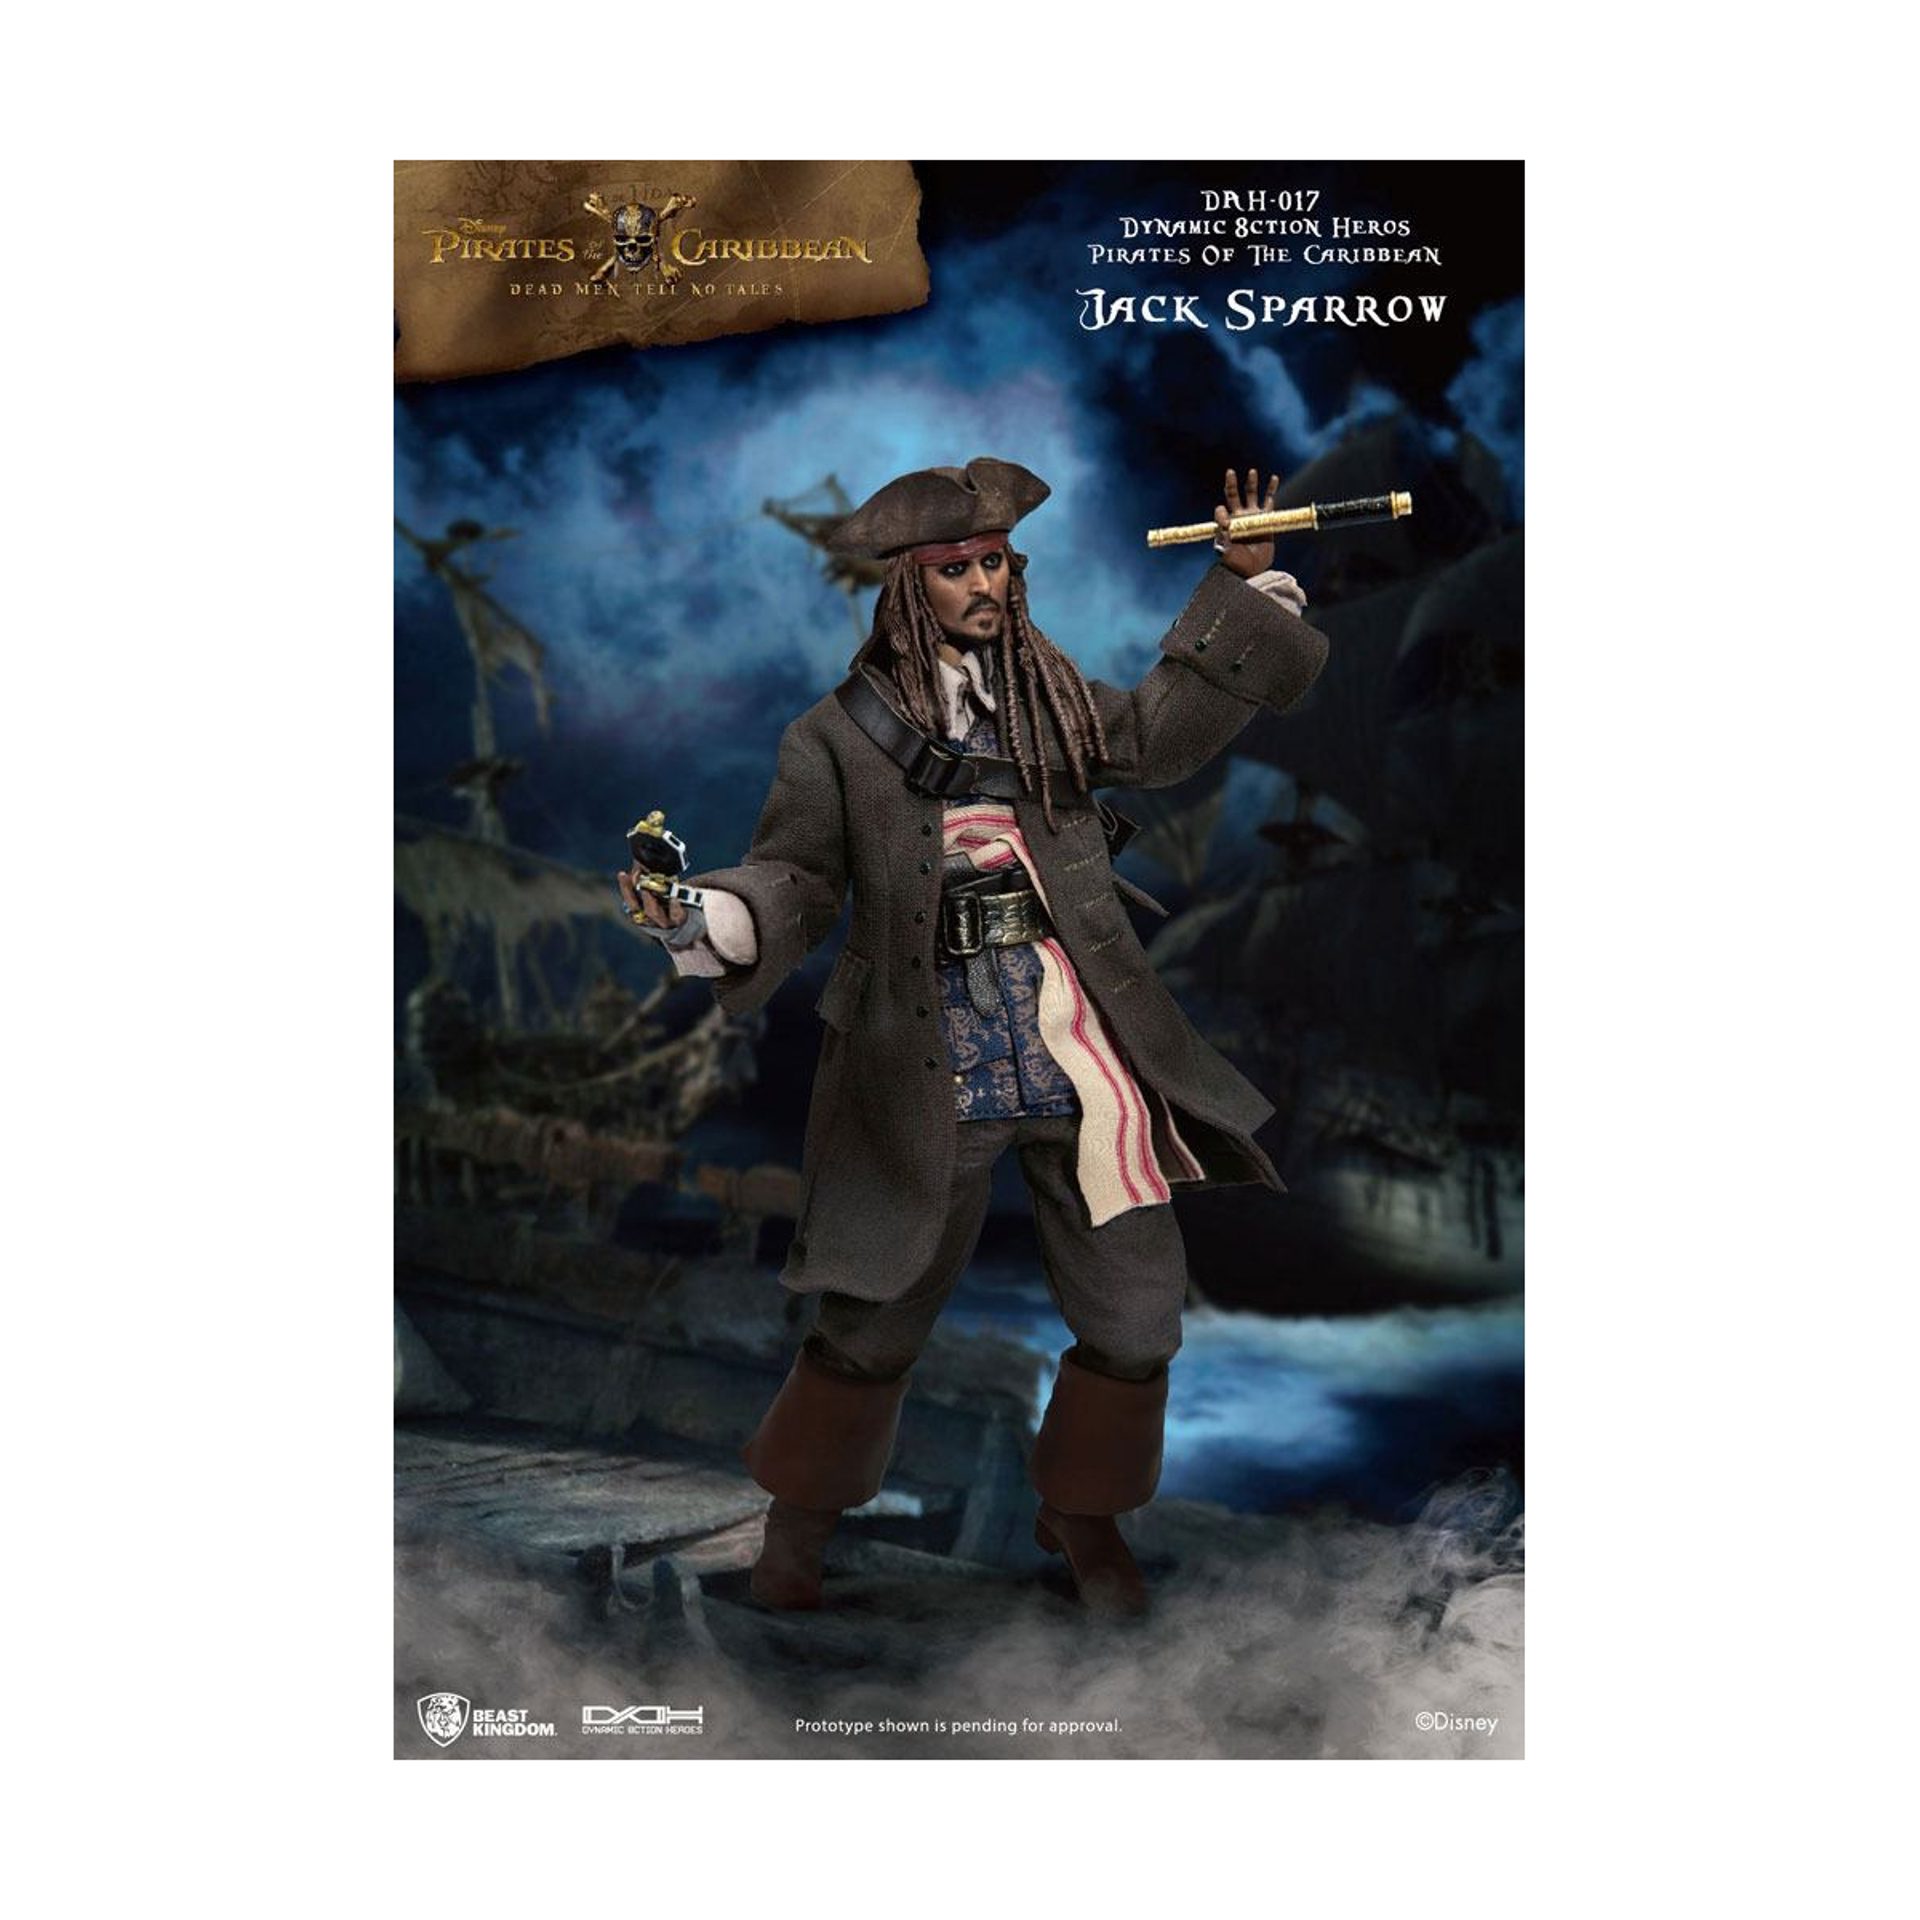 Disney - DAH-017 - Pirates des Caraïbes - Cap. Jack Sparrow